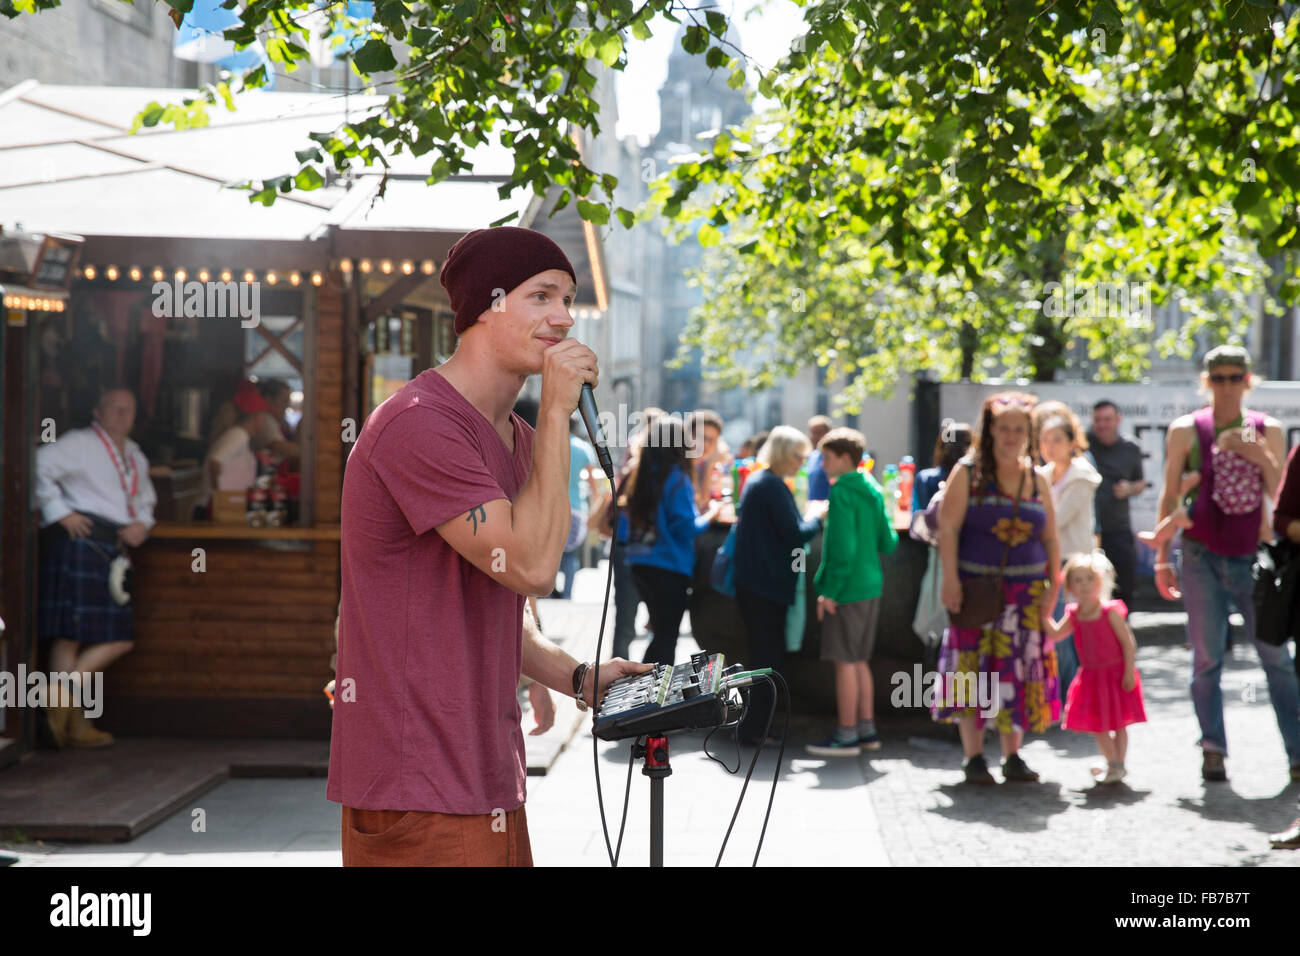 Street performer, Edinburgh Fringe festival. Stock Photo